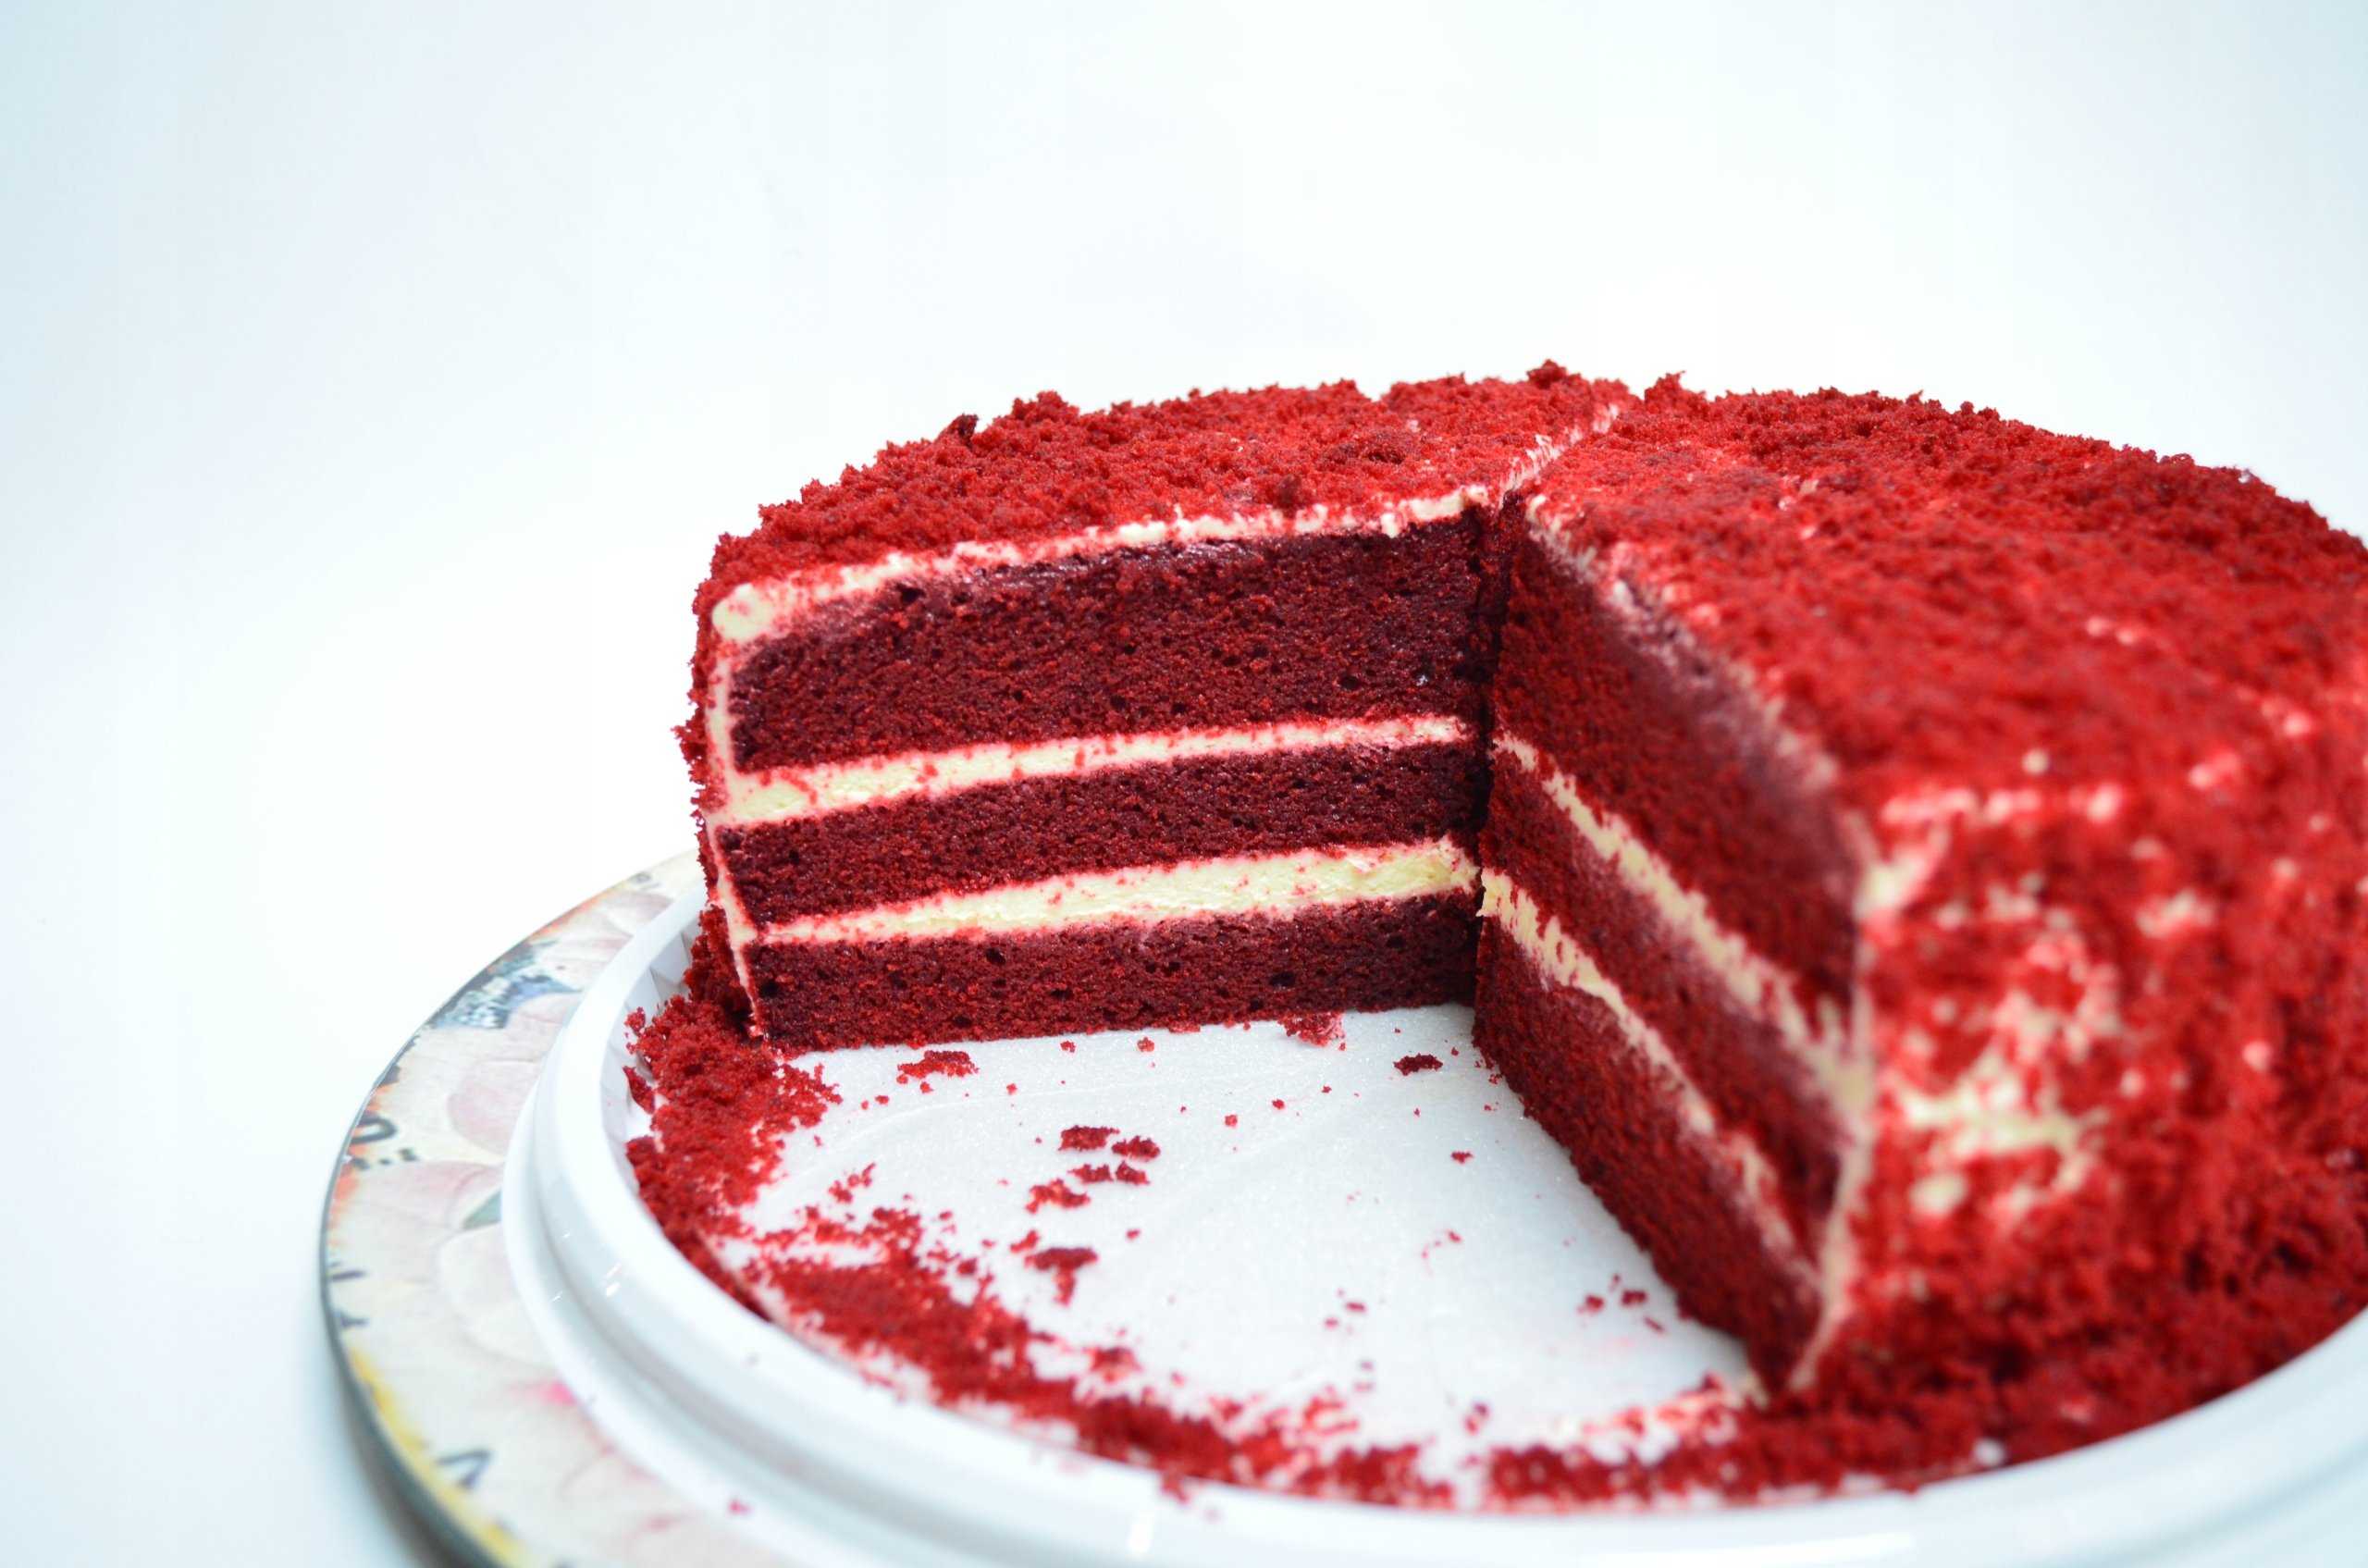 Торт «красный бархат» – яркое, вкусное удовольствие. лучшие рецепты известного торта «красный бархат» со свёклой и без - автор екатерина данилова - журнал женское мнение